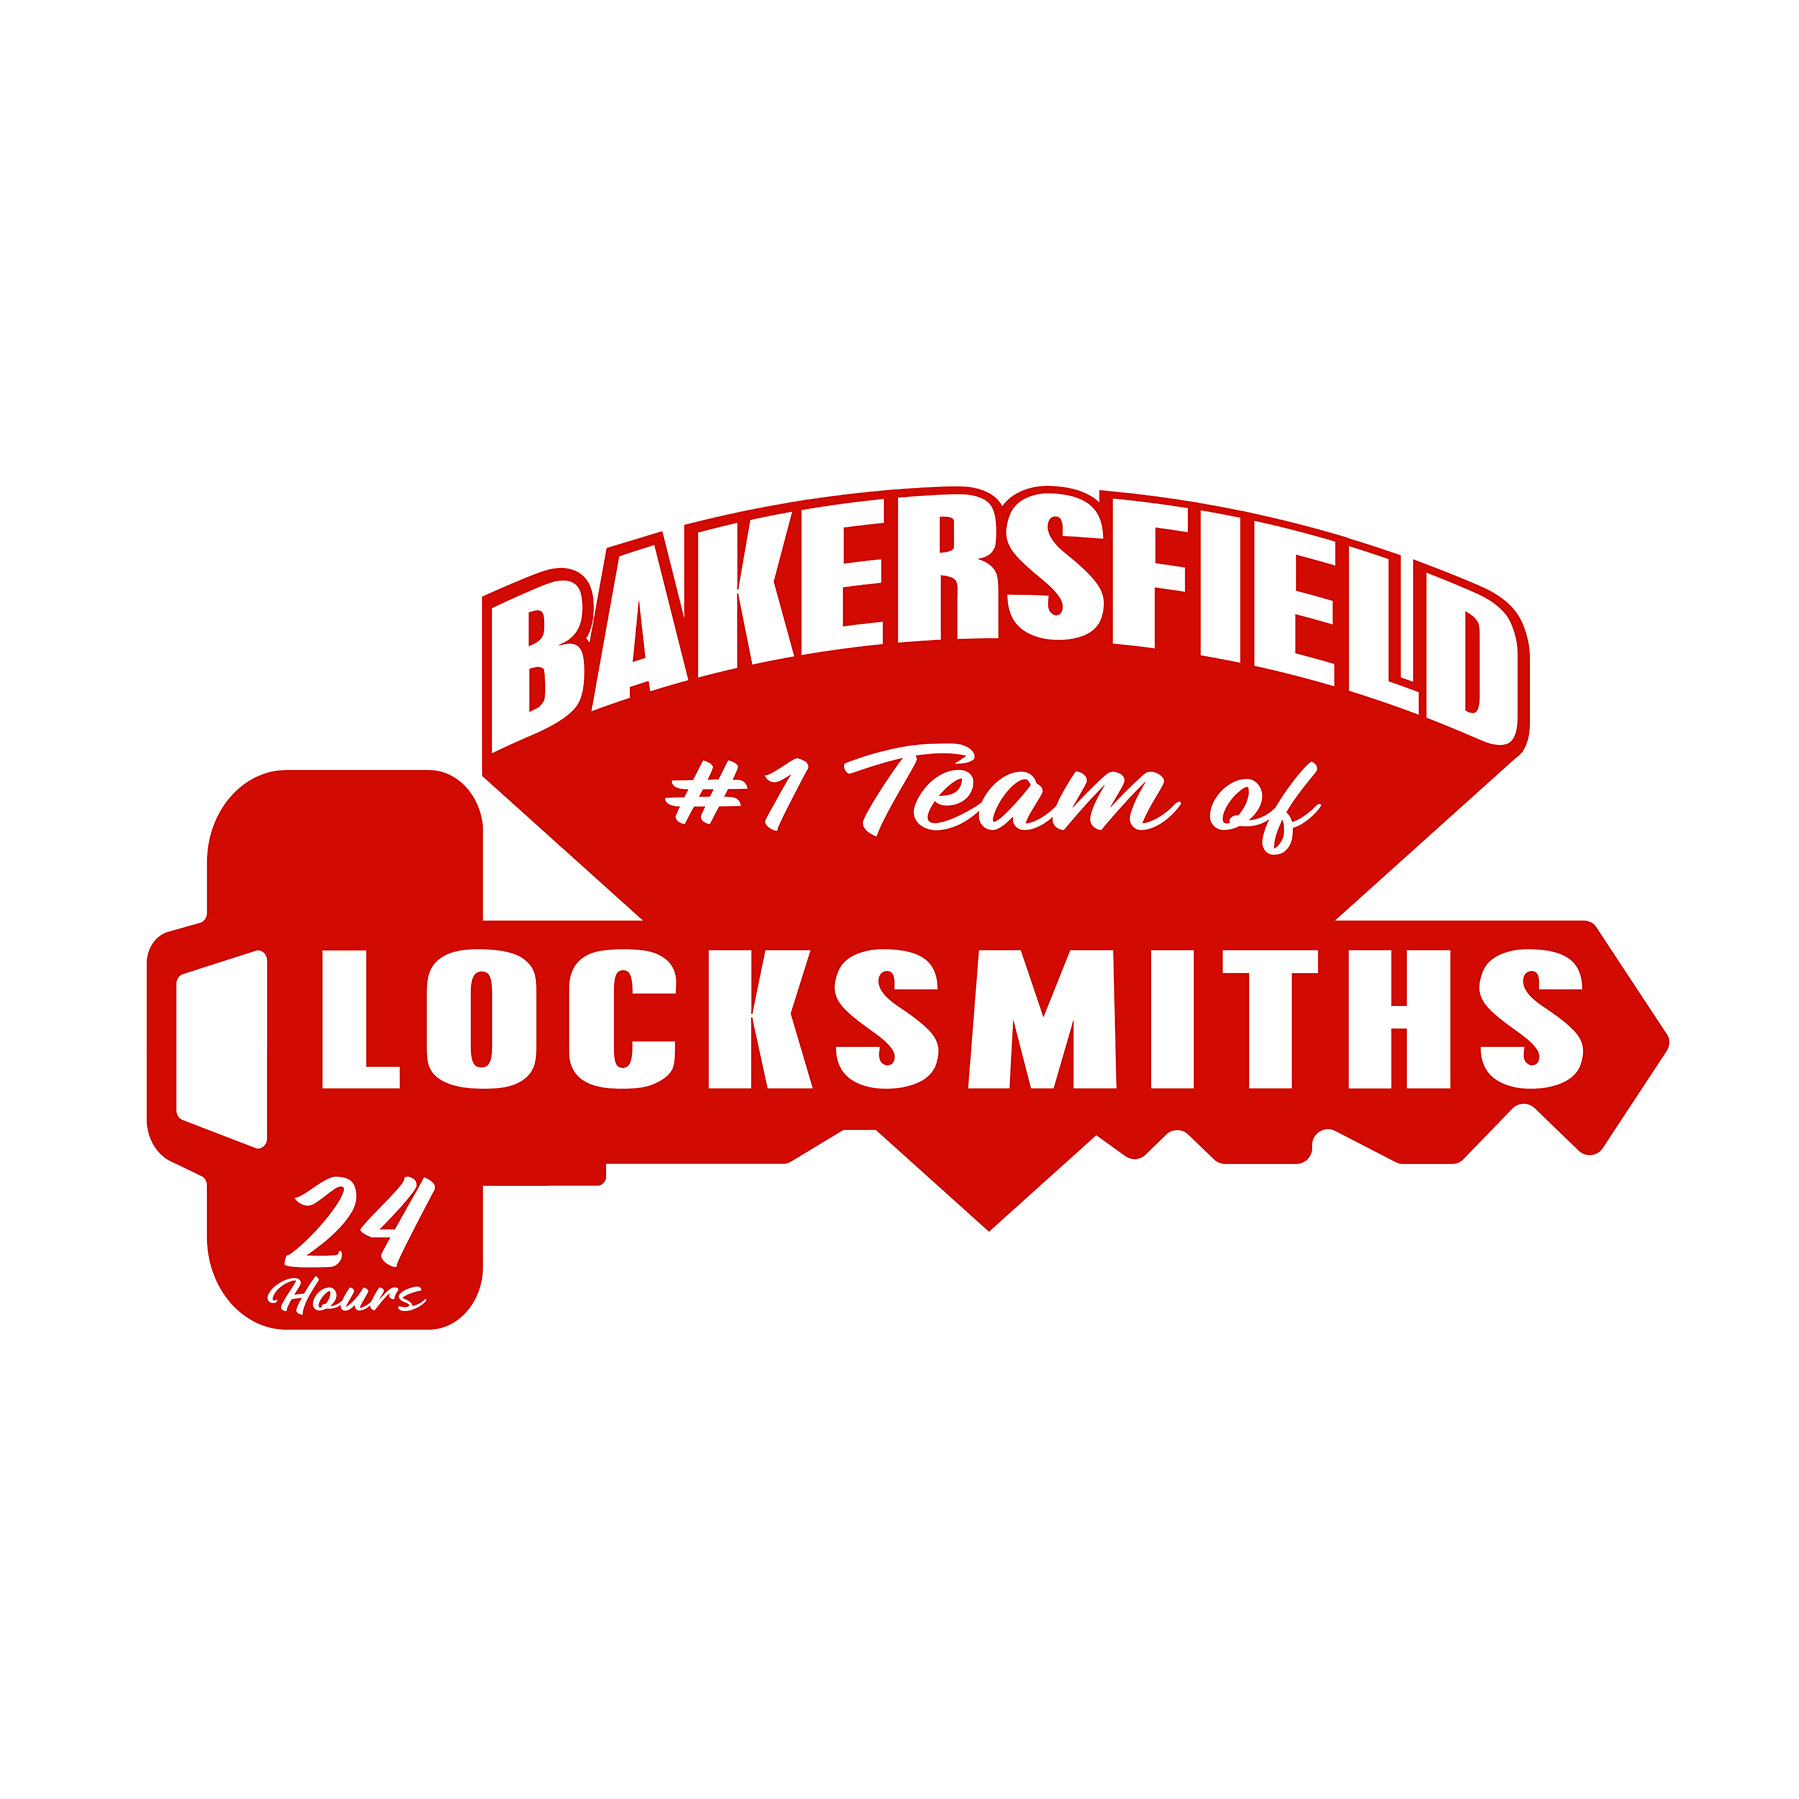 Bakersfield Locksmith